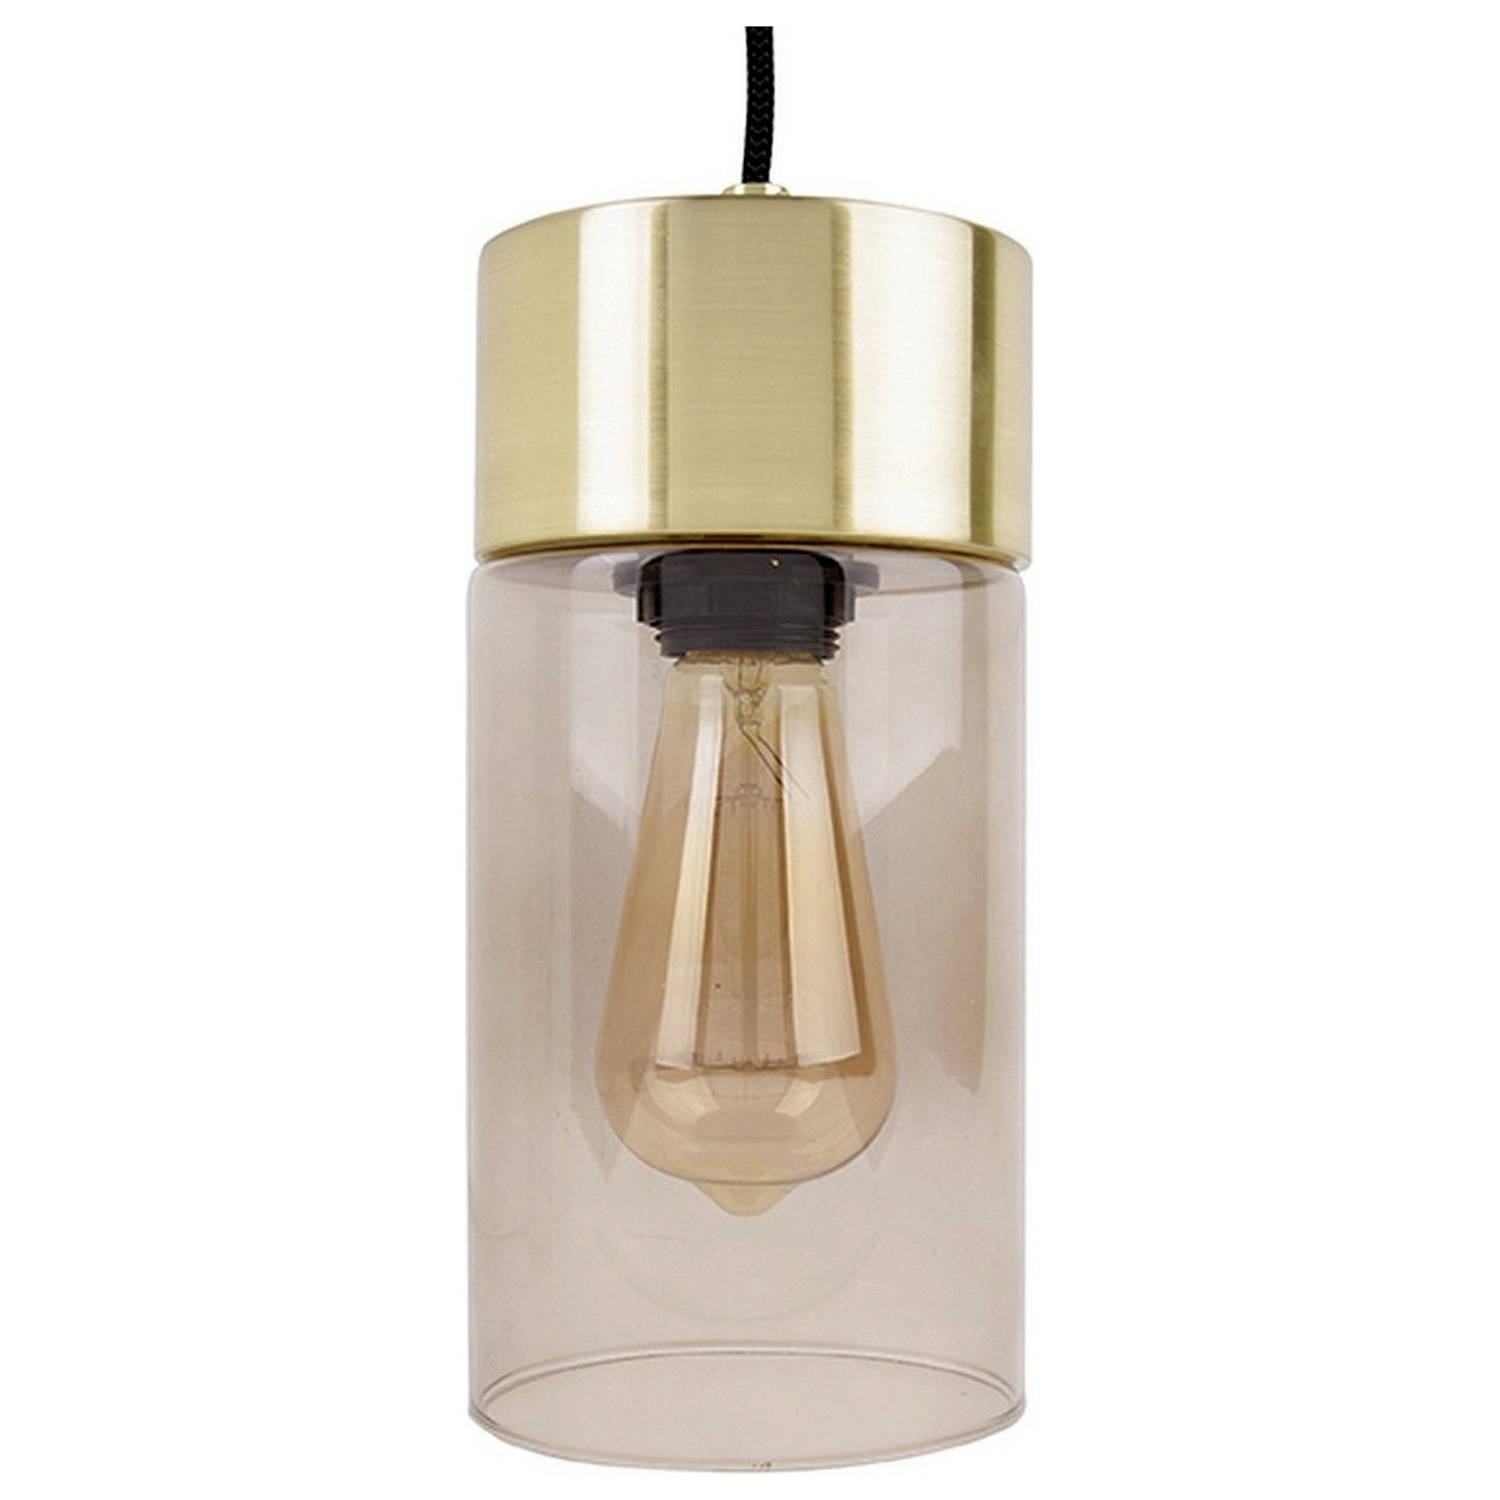 Hanglamp Lax Warm grijs glas Goud Incl. lichtbron Leitmotiv